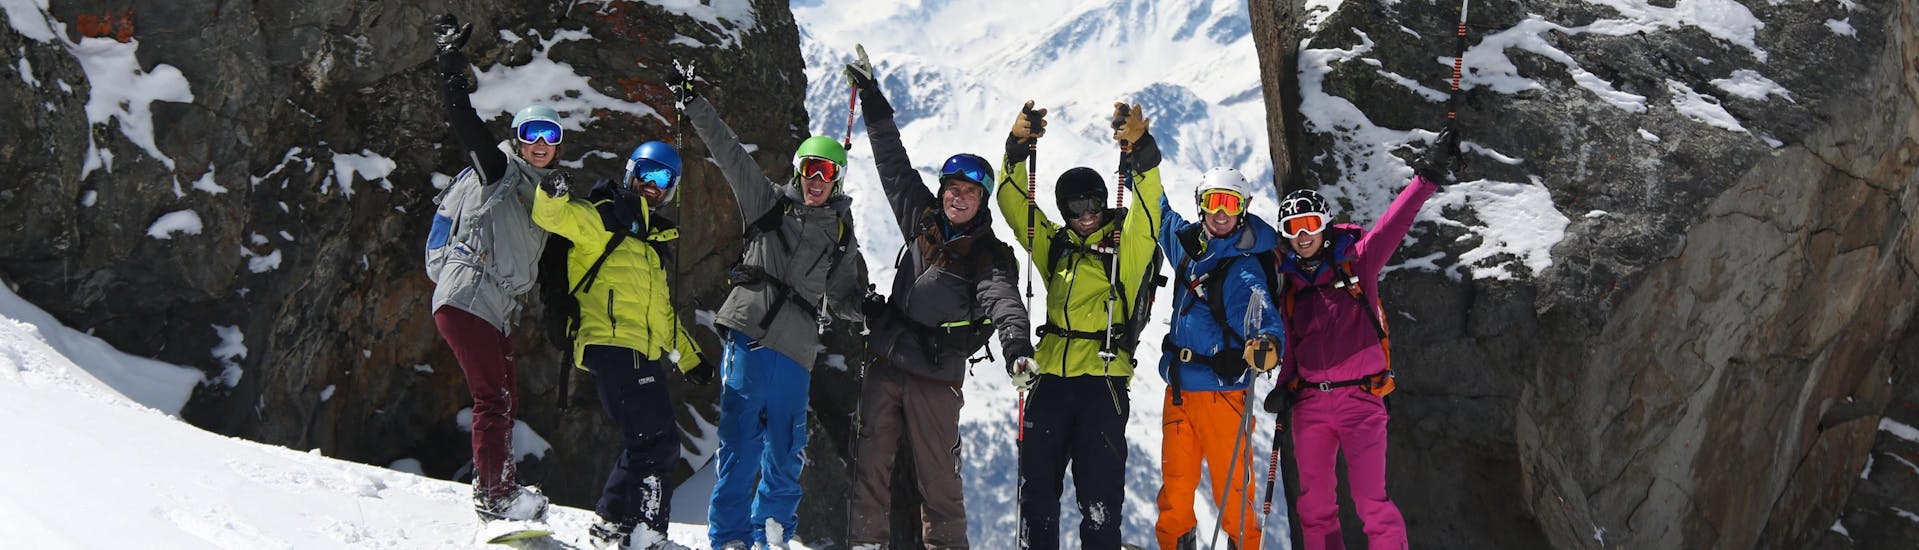 Un snowboarder se divierte con sus amigos durante las clases particulares de snowboard - Temporada alta - Todas las edades, que un equipo de monitores profesionales de Prosneige Val d'Isère diseñó según sus necesidades.